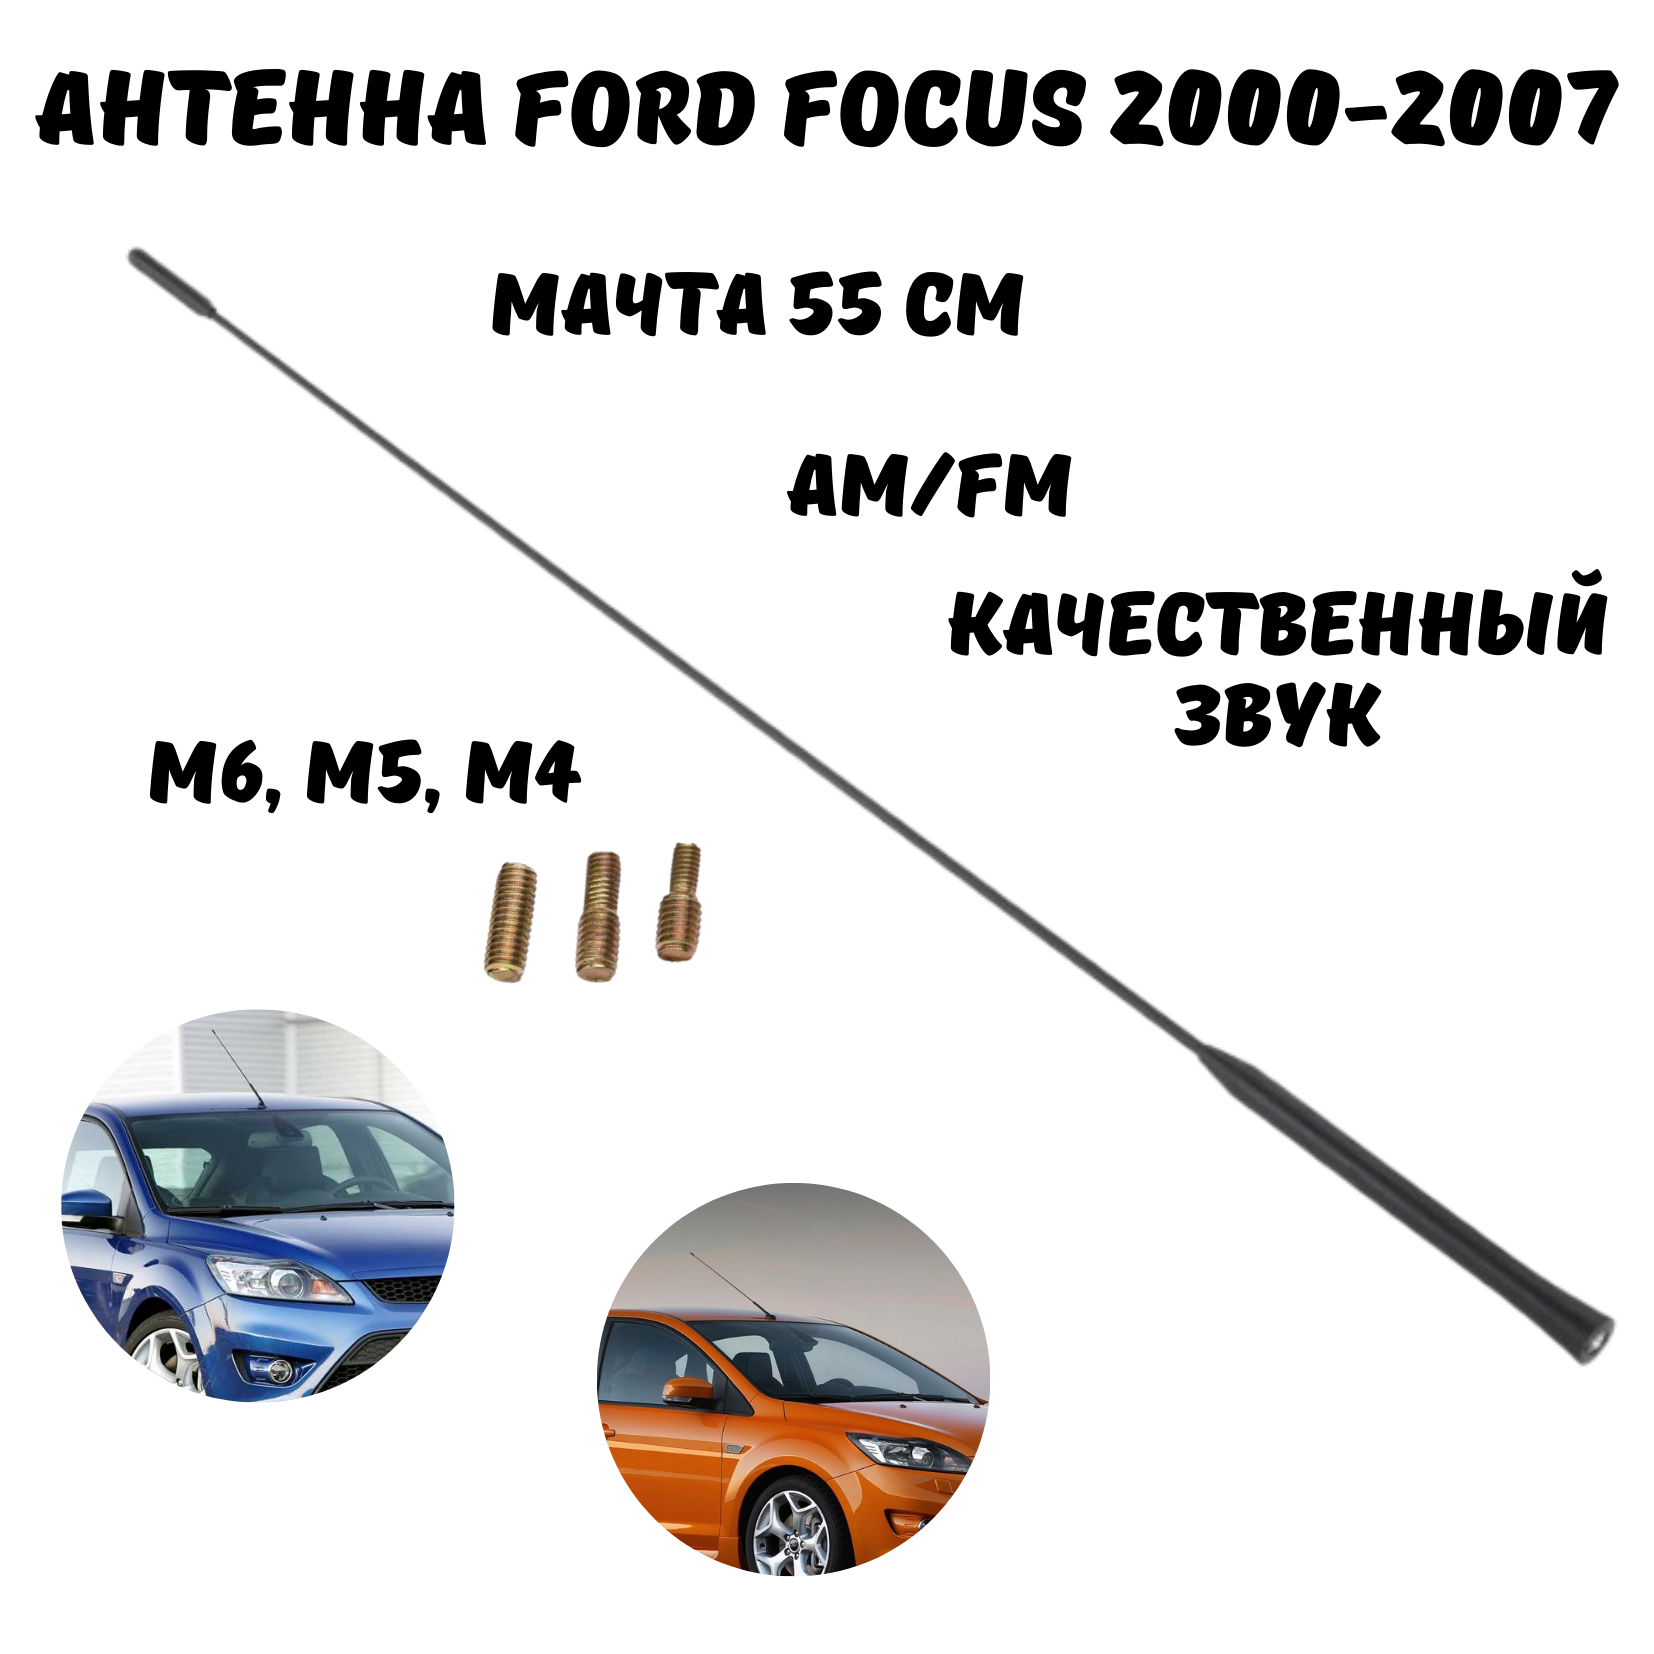 Антенна автомобильная для радио на крышу Форд Фокус, антенна для рации